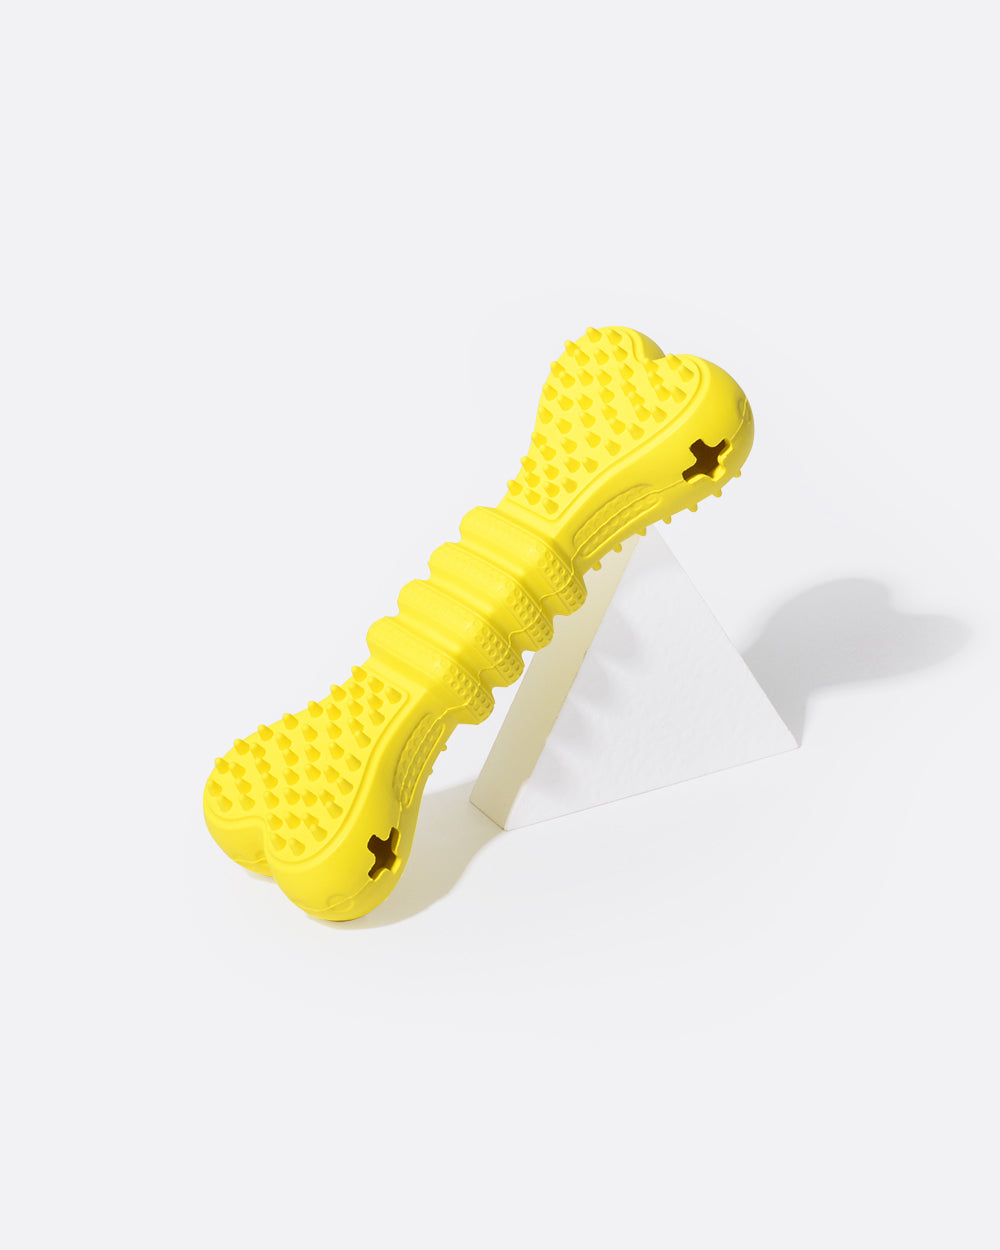 Treat Dispensing Dog Toy - Yellow Bone